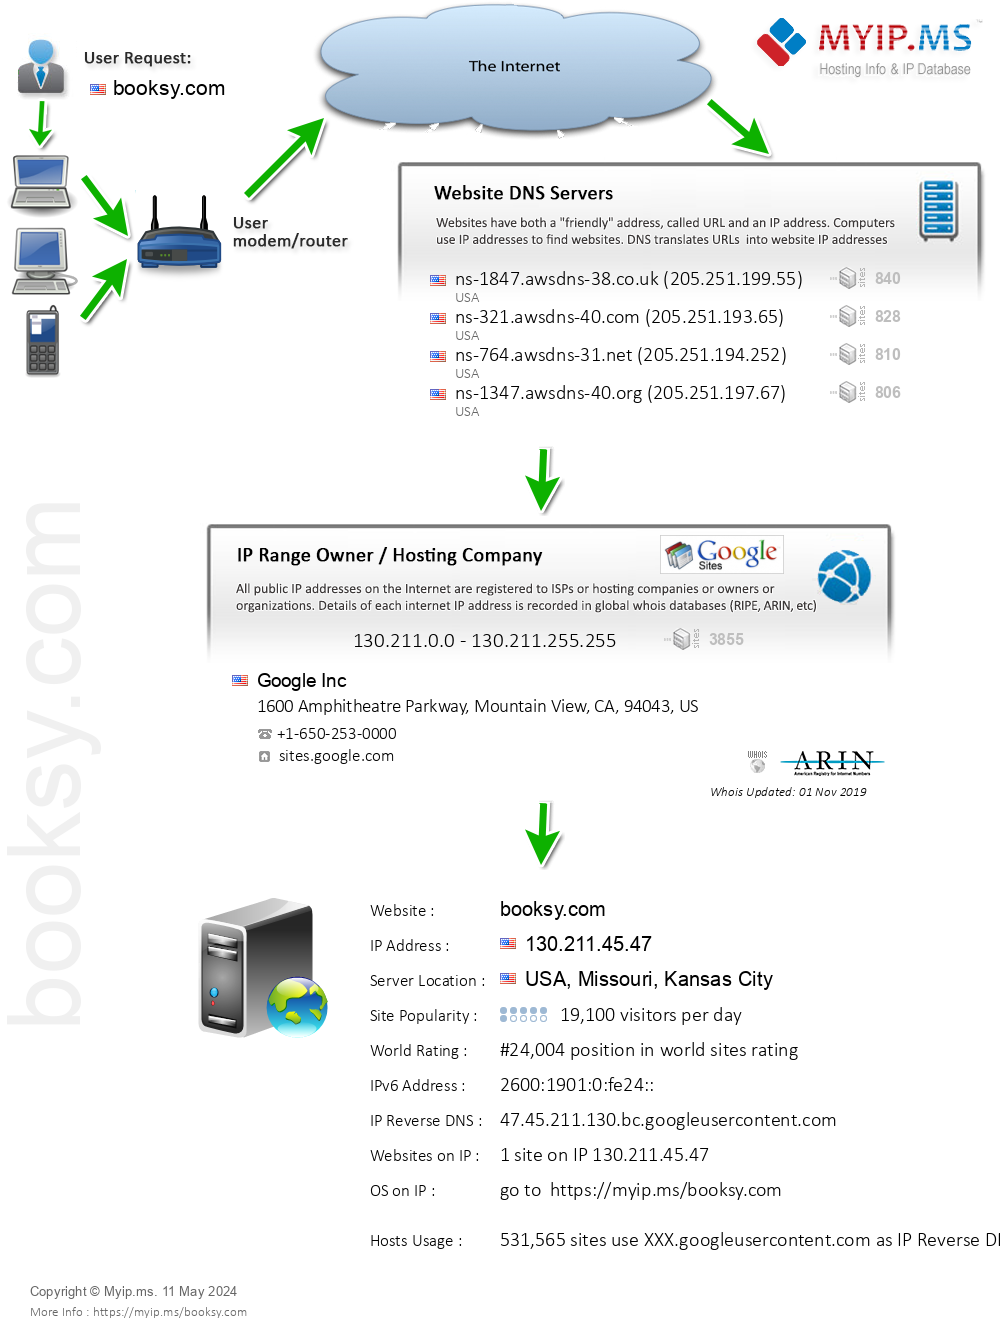 Booksy.com - Website Hosting Visual IP Diagram